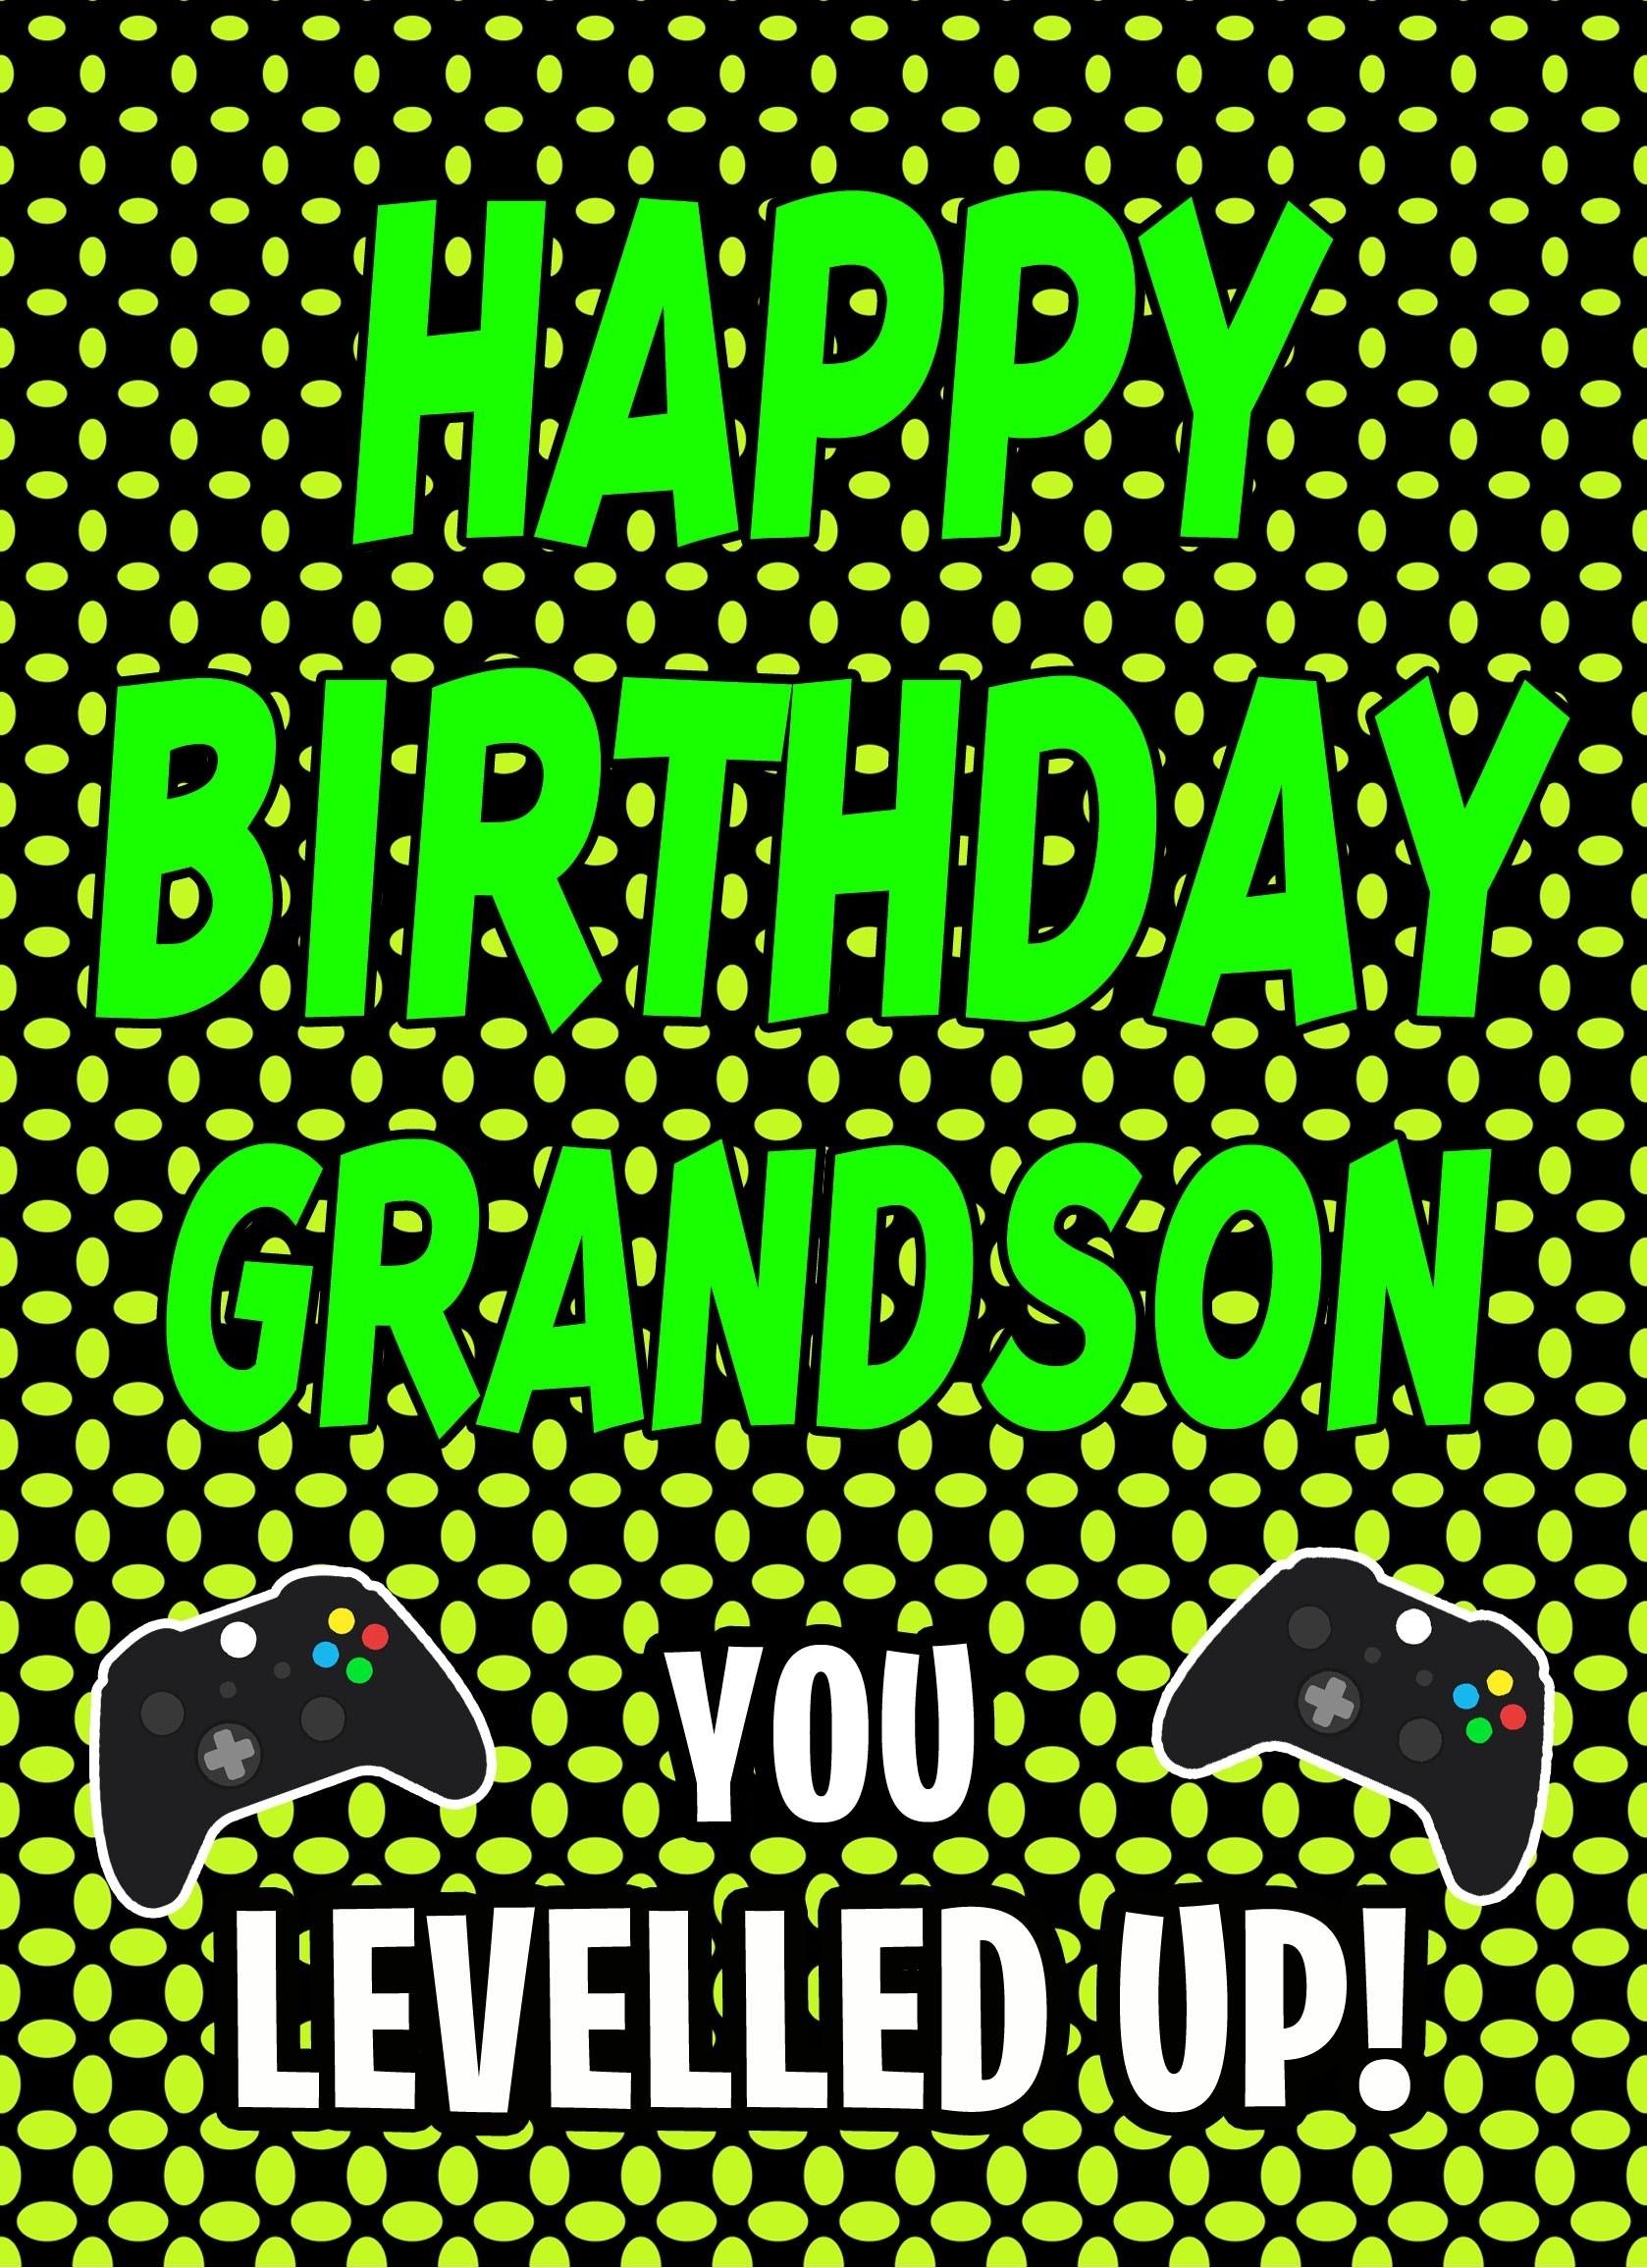 Gamer Birthday Card For Grandson (Levelled Up)